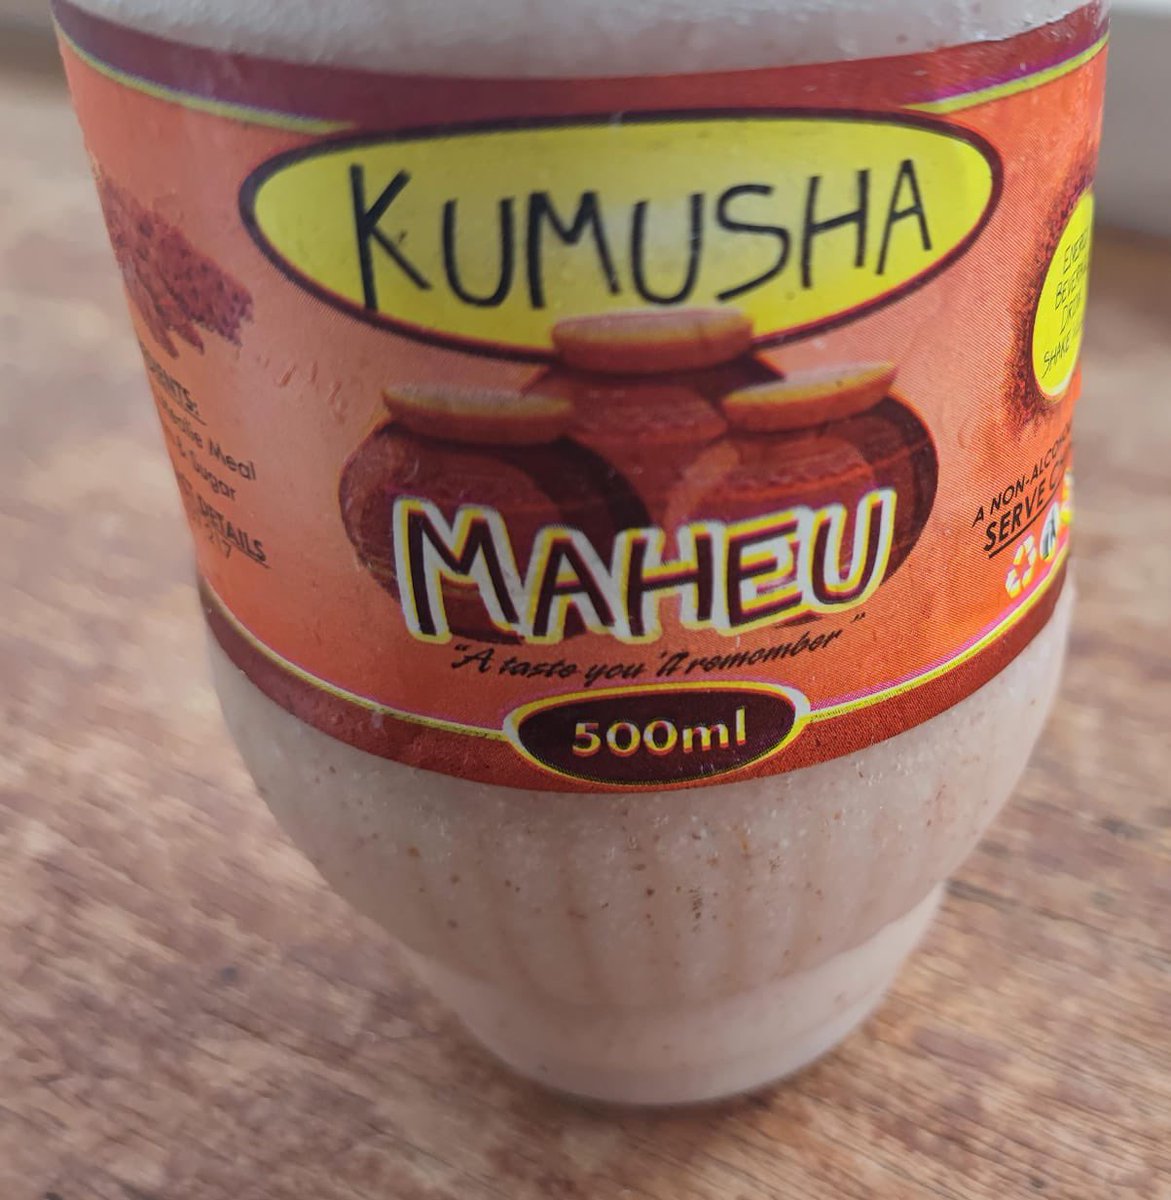 Not us but we are flattered. #kumushawines #kumushacoffee